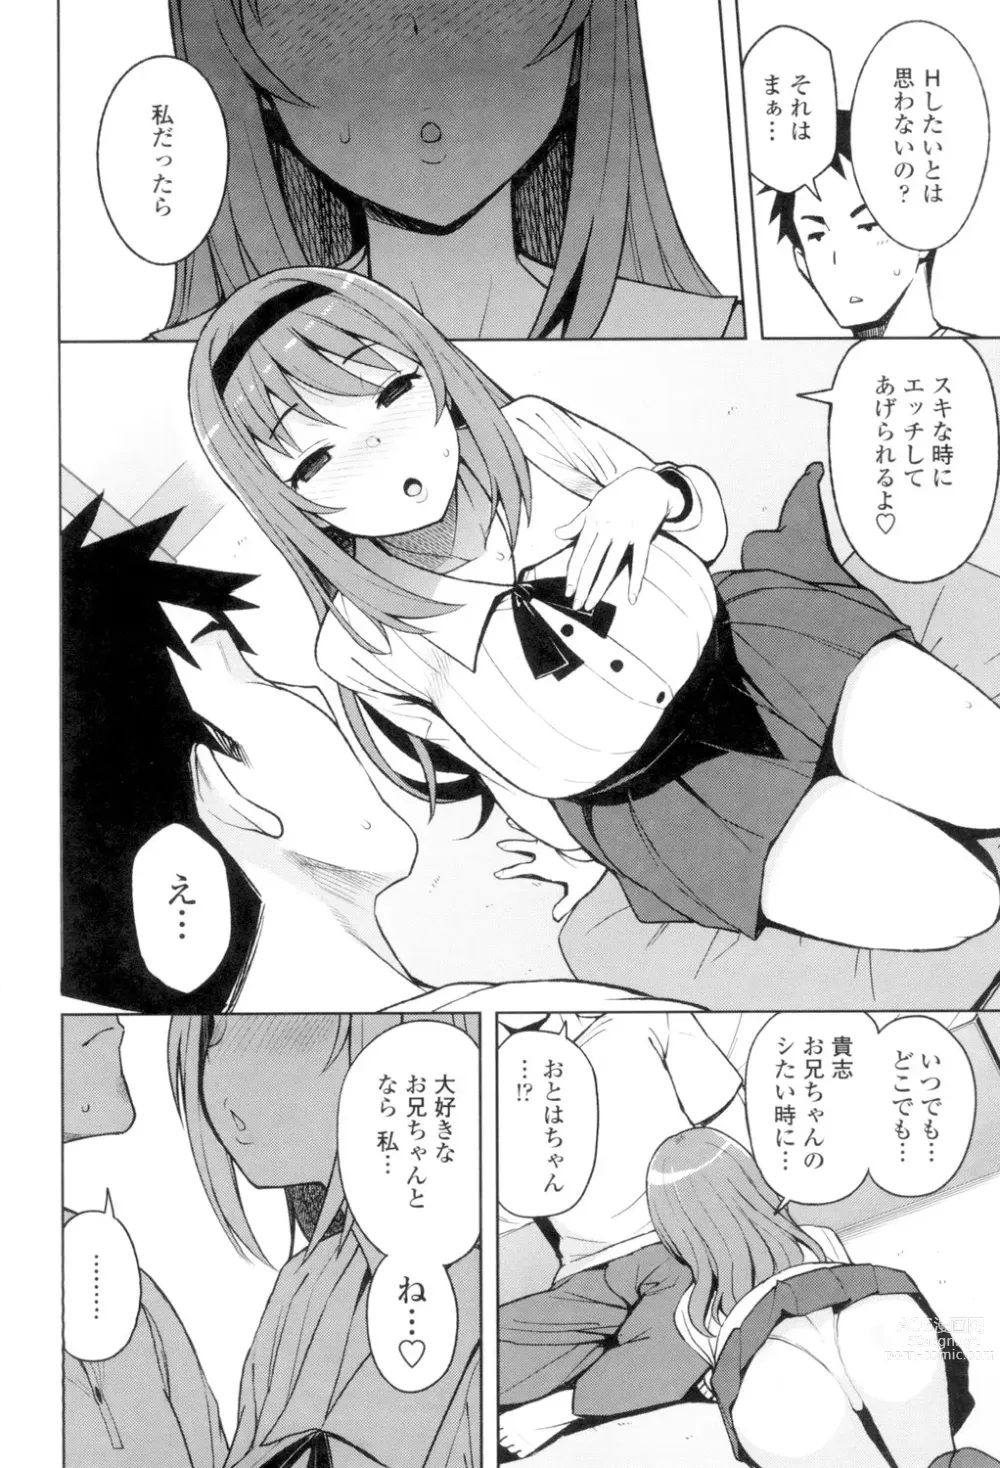 Page 7 of manga Caramel Hame-Art